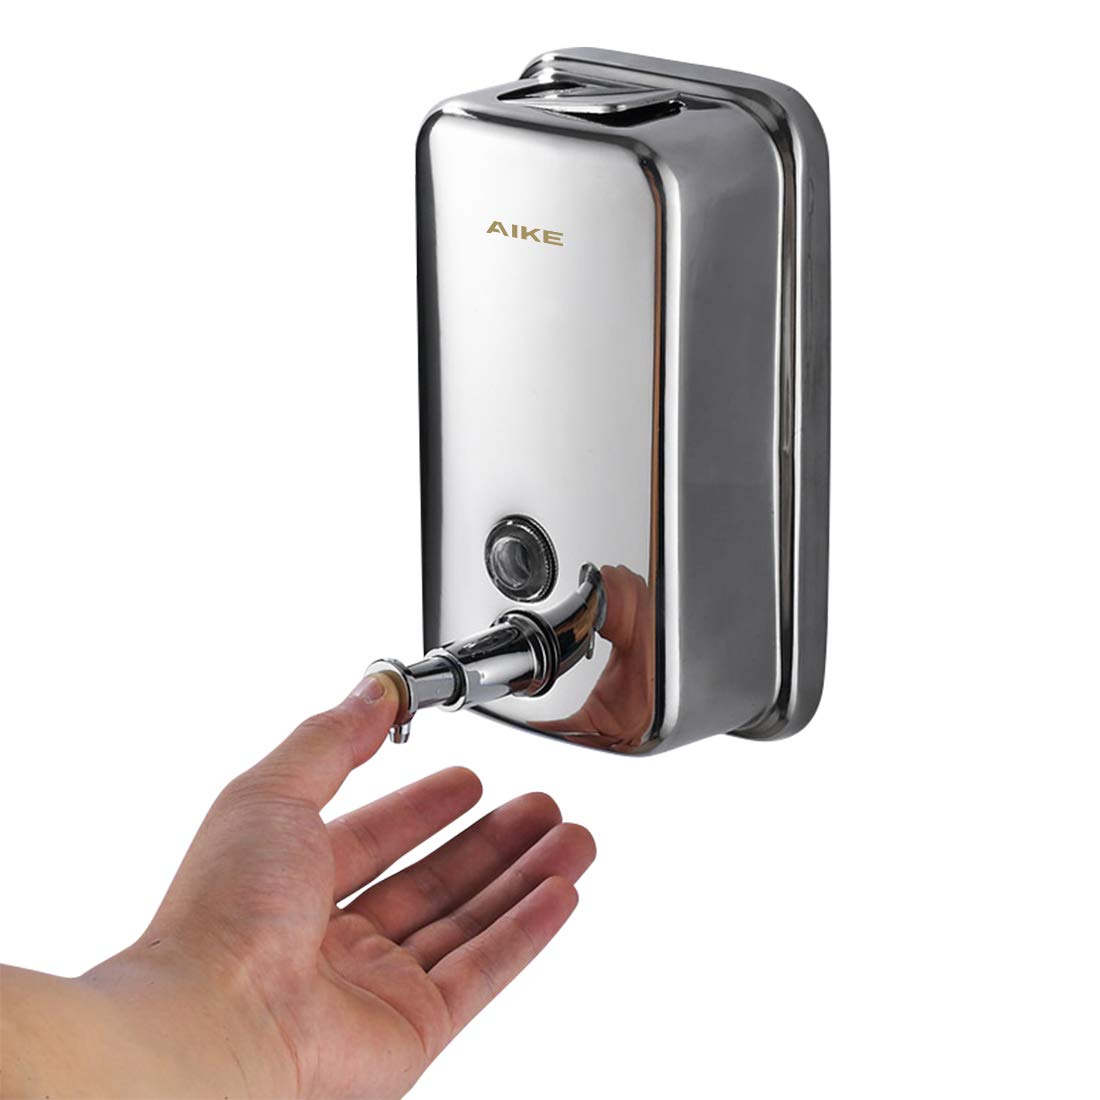 OXO Good Grips Stainless Steel Soap Dispenser, 15 fl oz